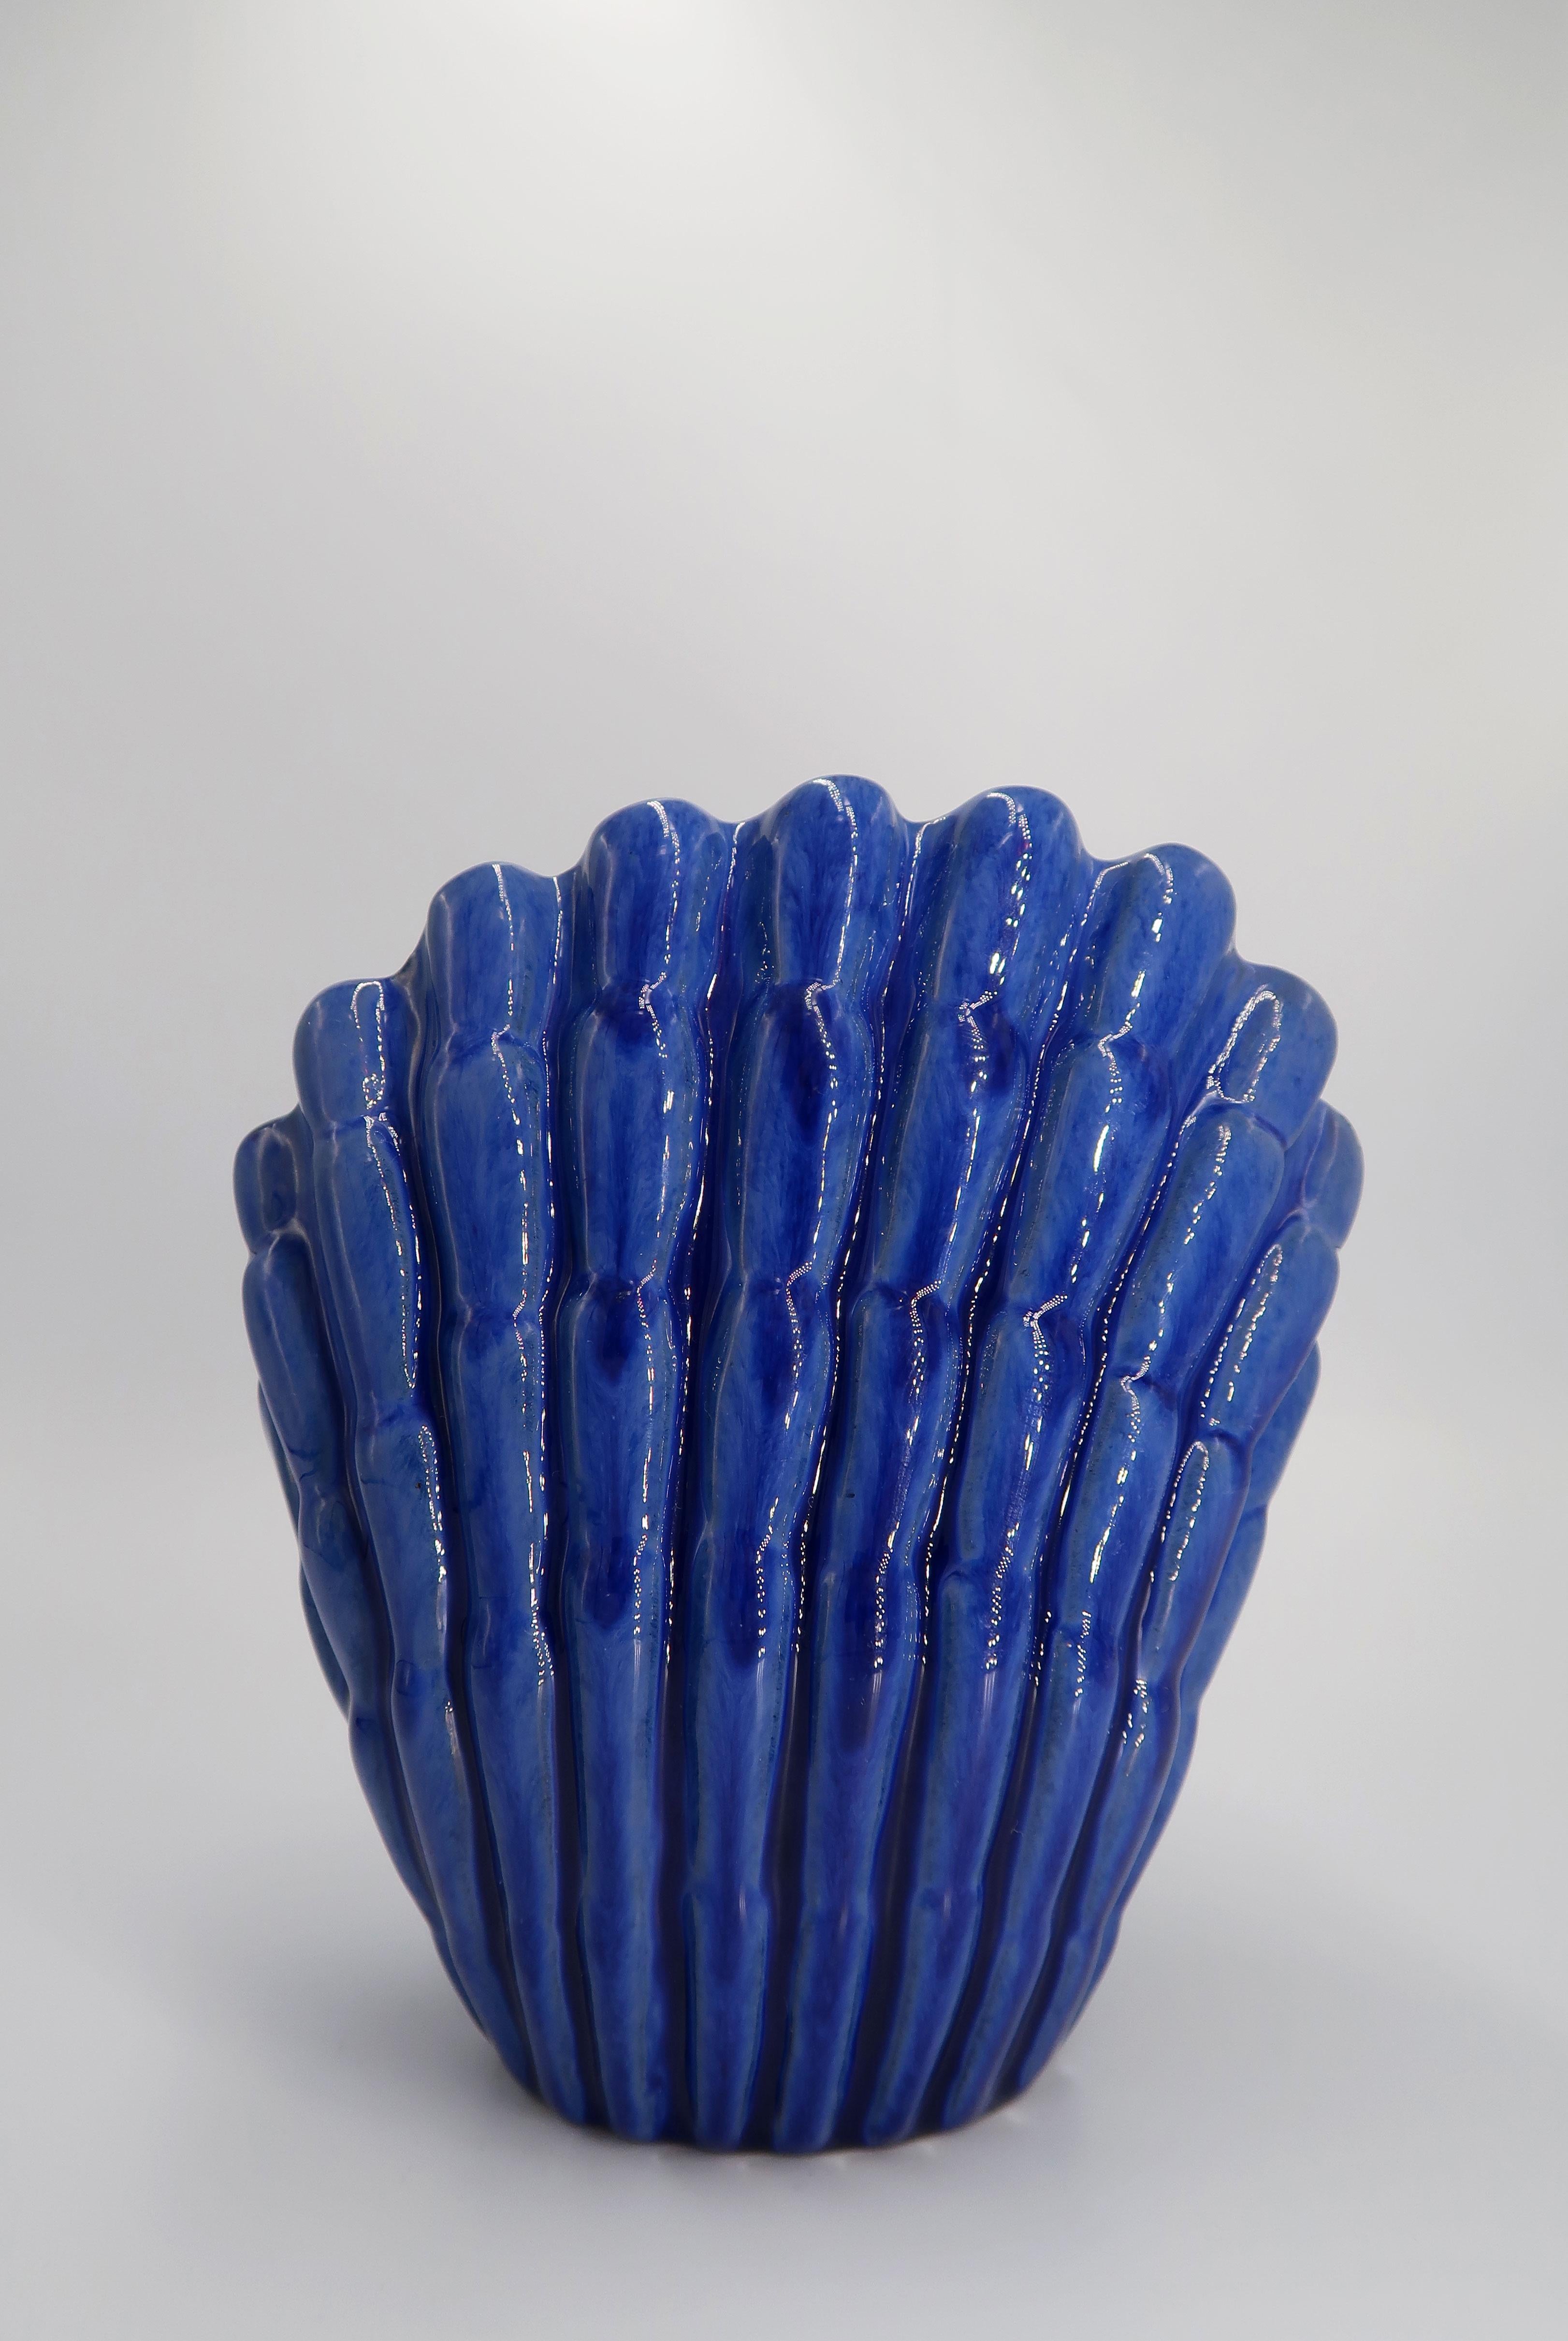 1940s Art Deco Cobalt Blue Shell Shaped Vase, Vicke Lindstrand, Sweden For Sale 2